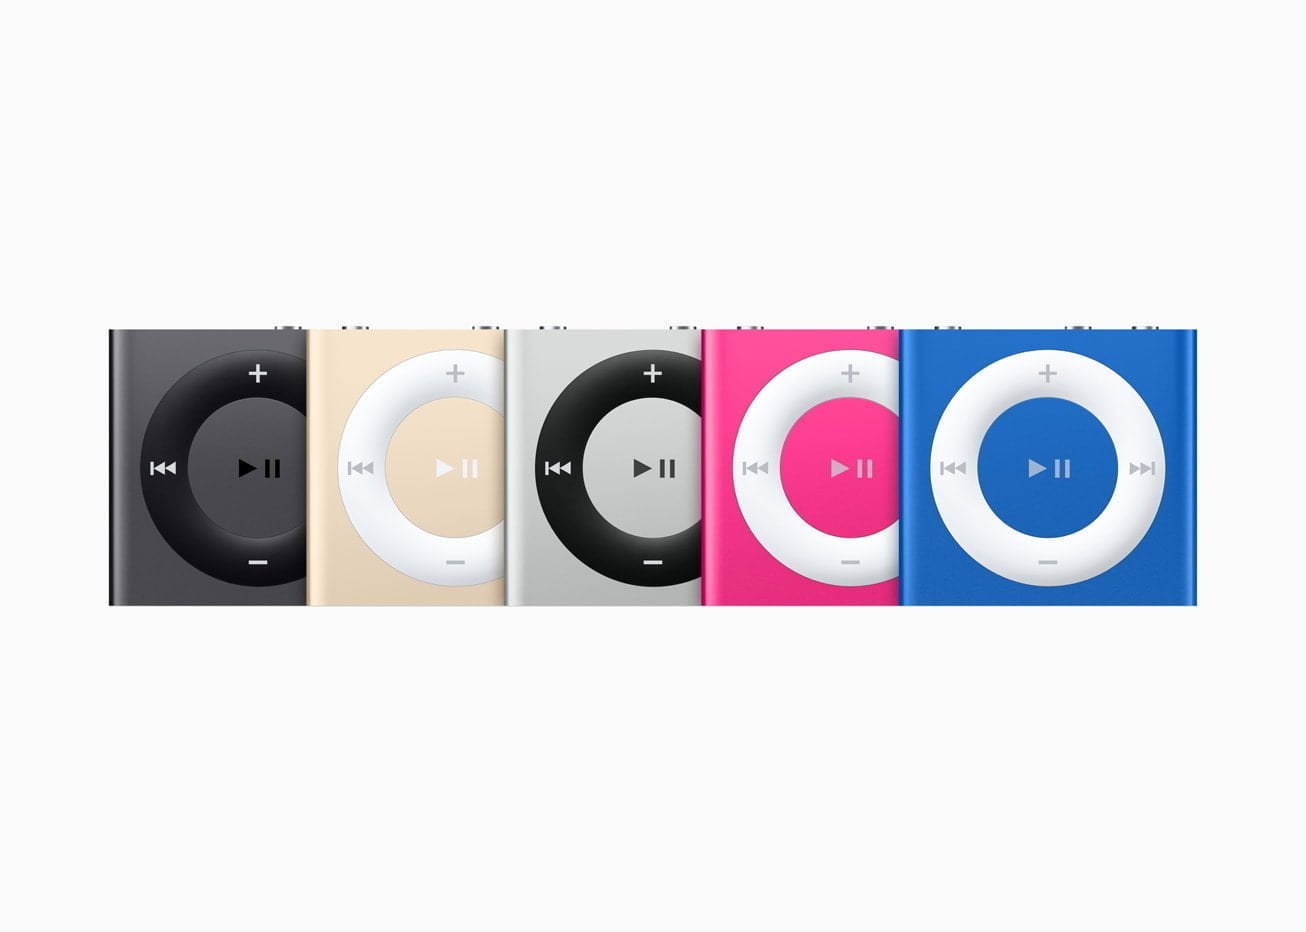 iPod Shuffle (4. generation) blev introduceret den 15. juli 2015. Den meget lille enhed (uden skærm) tilbød op til 15 timers batteritid, 2 GB hukommelse og VoiceOver-knapper, så man kunne høre sangtitler, navn på playlister og batteristatus. (Foto: Apple)